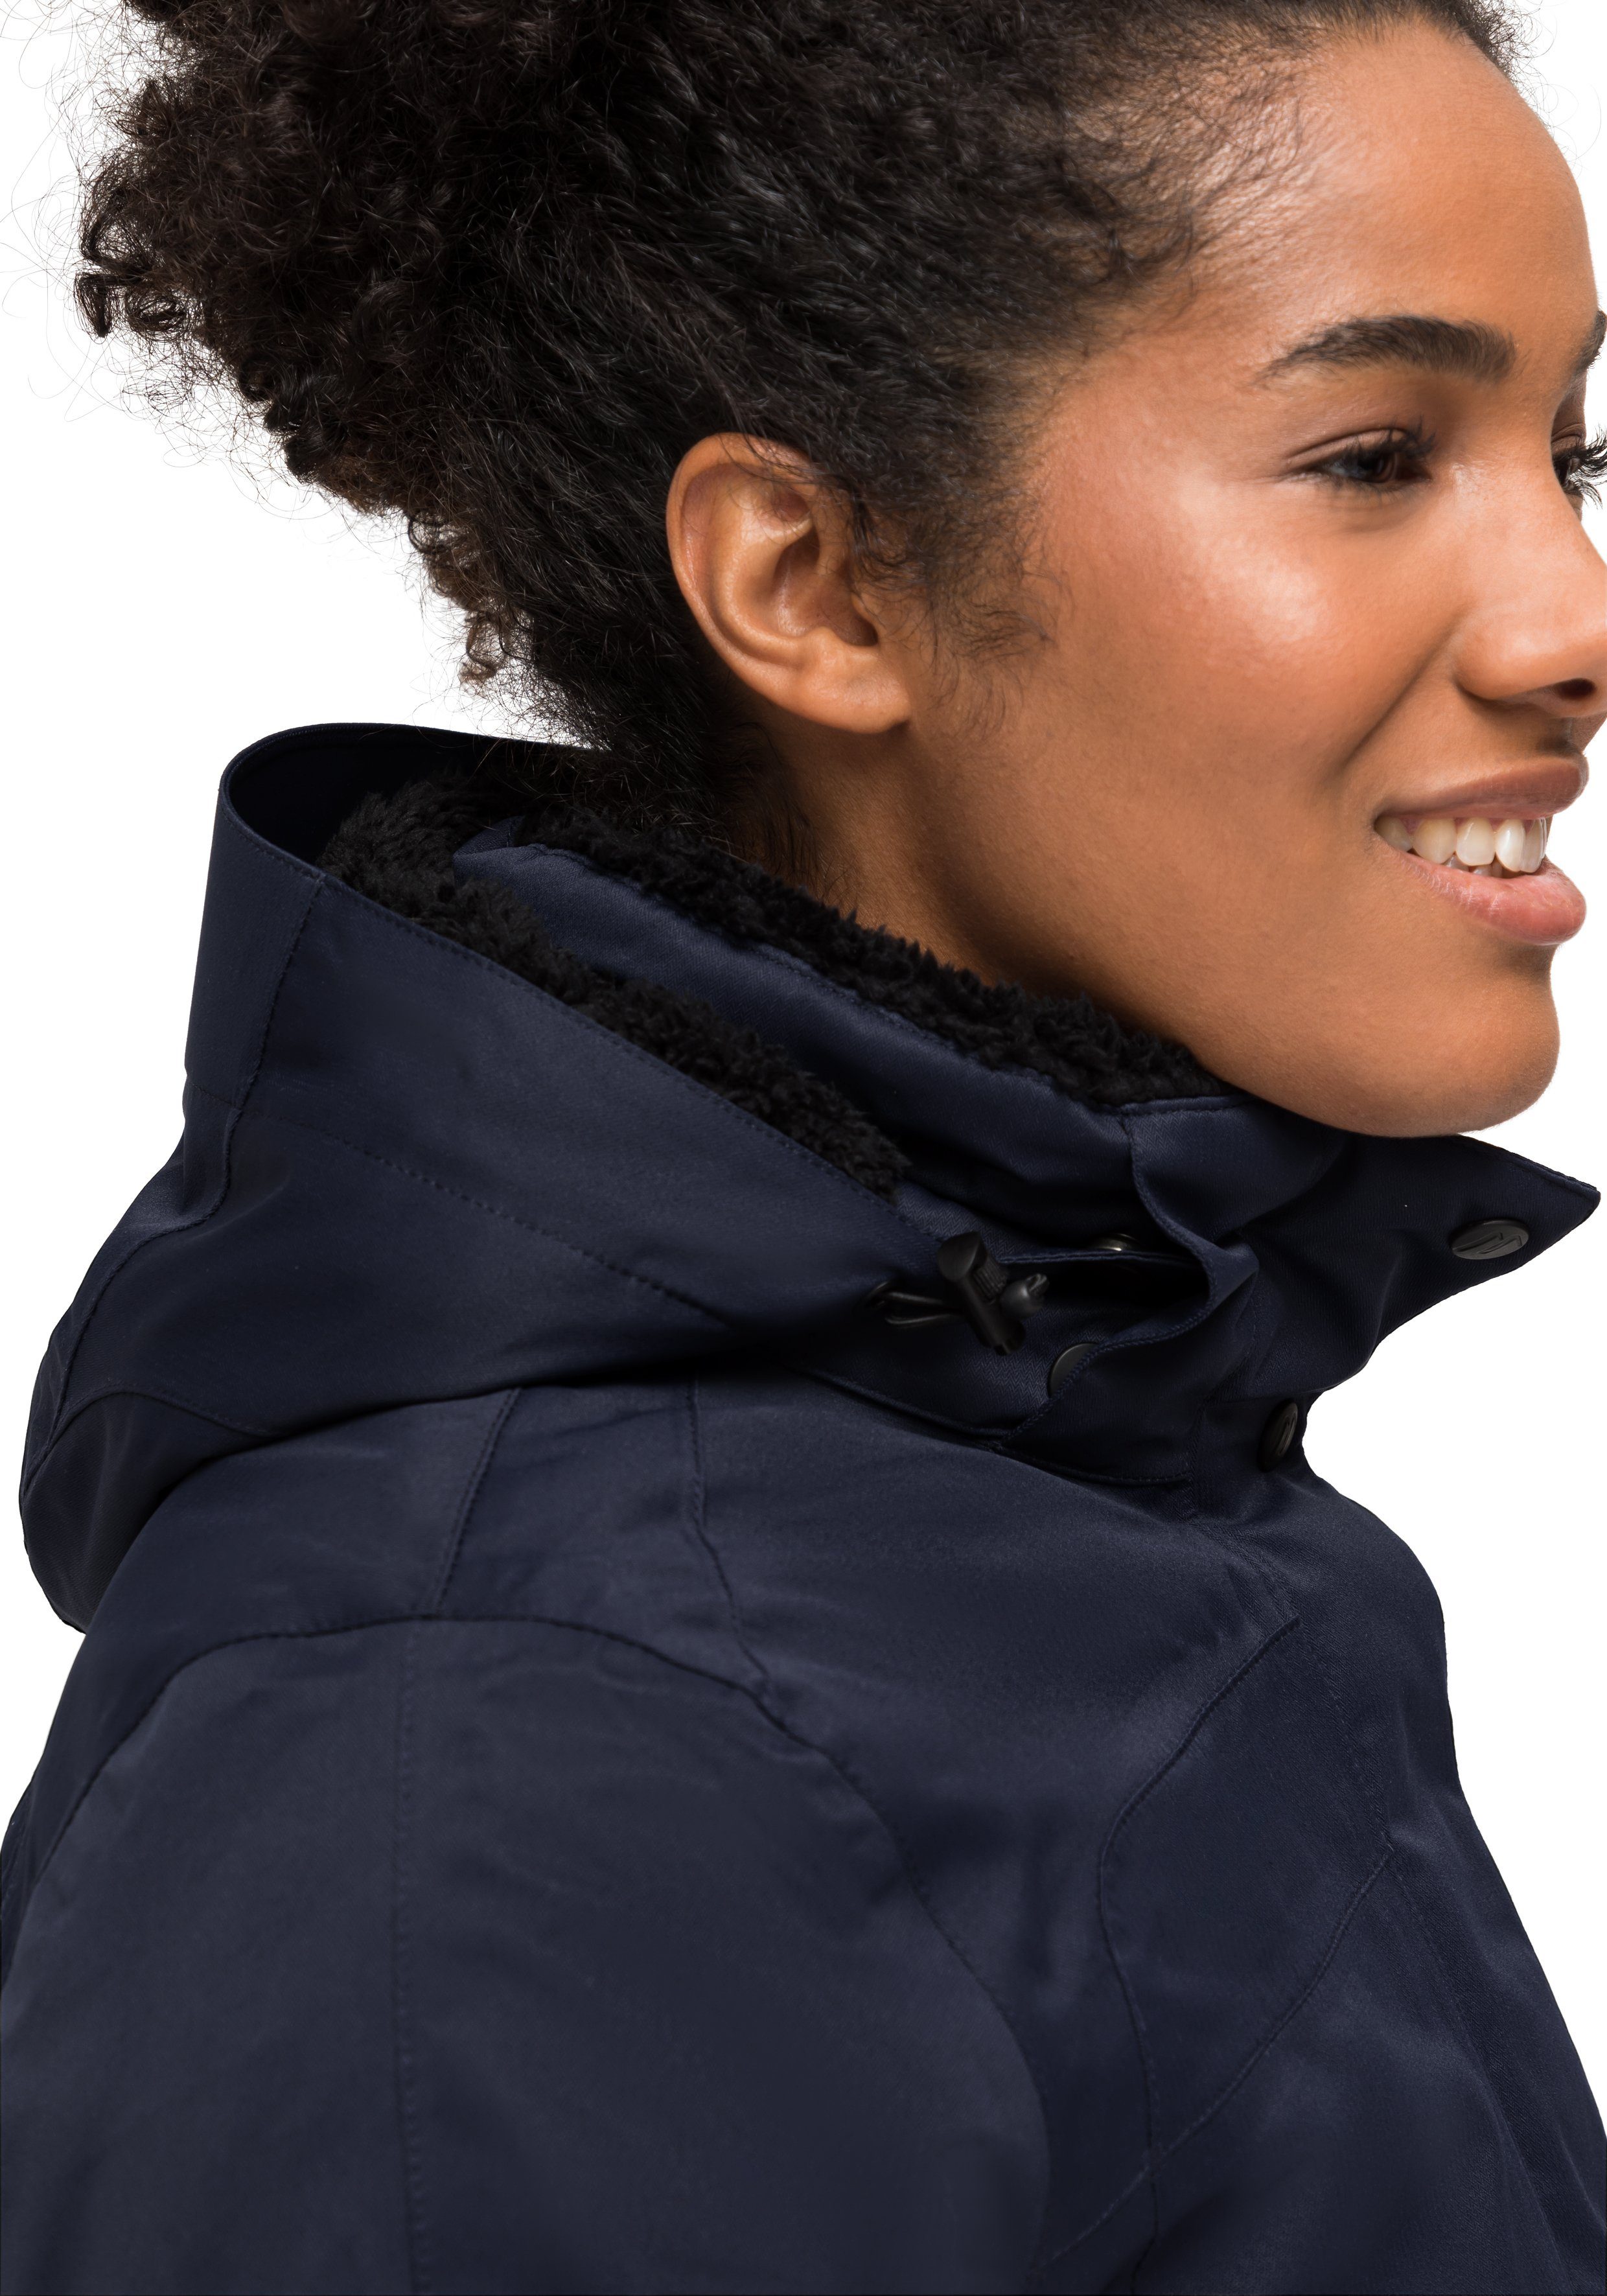 Wetterschutz Maier Sports Outdoor-Mantel Funktionsjacke vollem 2 Lisa mit dunkelblau